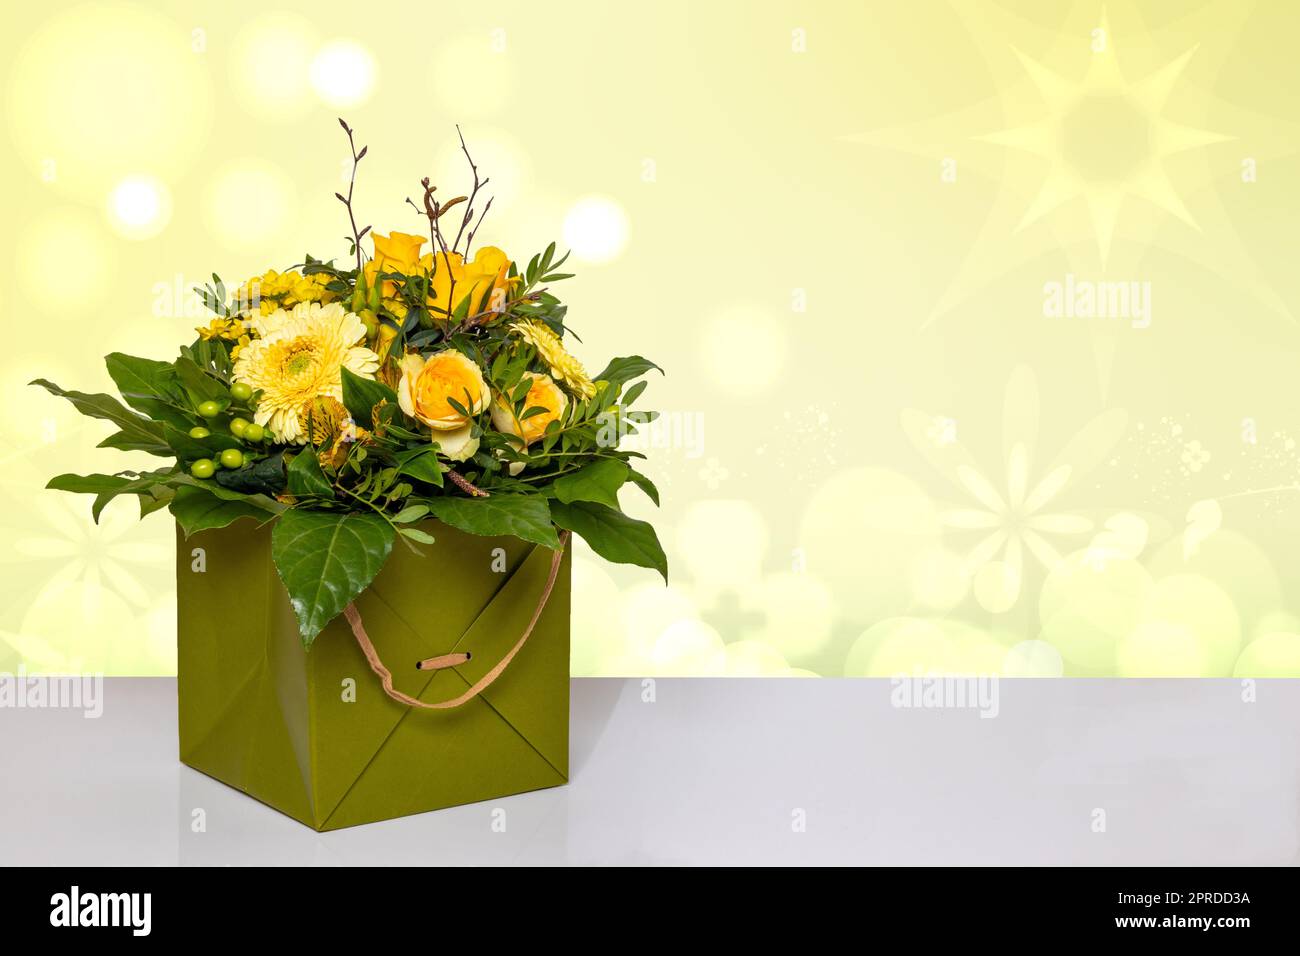 Abschluss eines wunderschönen Straußes gelber Blumen in einer dekorativen grünen Geschenkbox auf einem hellen Tisch vor einem abstrakten Frühlingshintergrund. Makro. Raum für Design. Kartenkonzept. Stockfoto